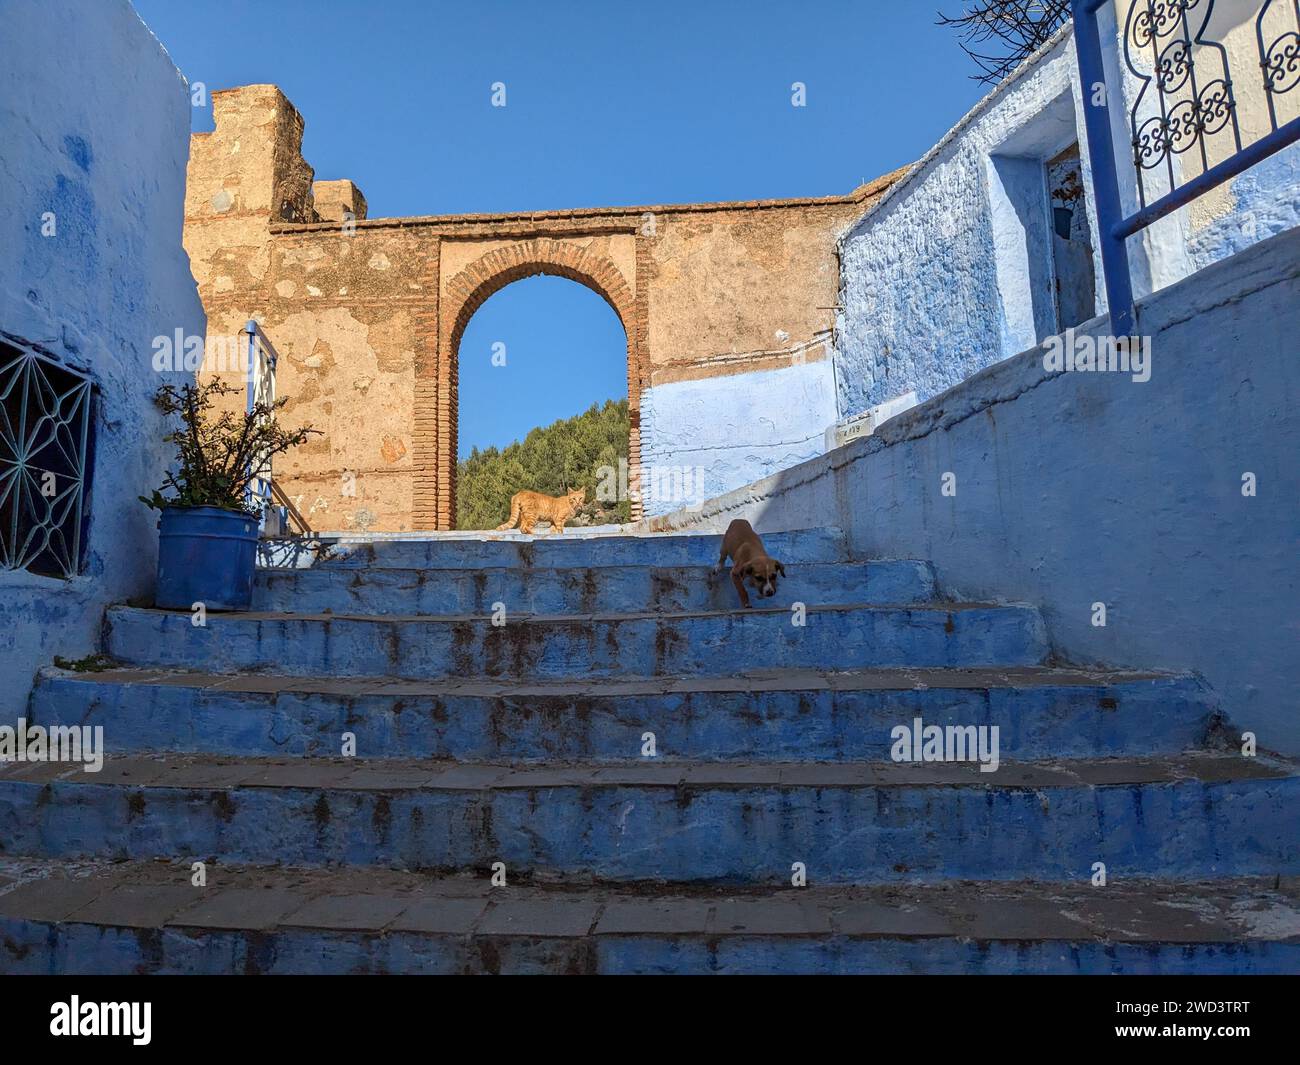 Fantastischer Blick auf die Straßen in der blauen Stadt Chefchaouen. Lage: Chefchaouen, Marokko, Afrika. Künstlerisches Bild. Auch Blaue Perle genannt Stockfoto